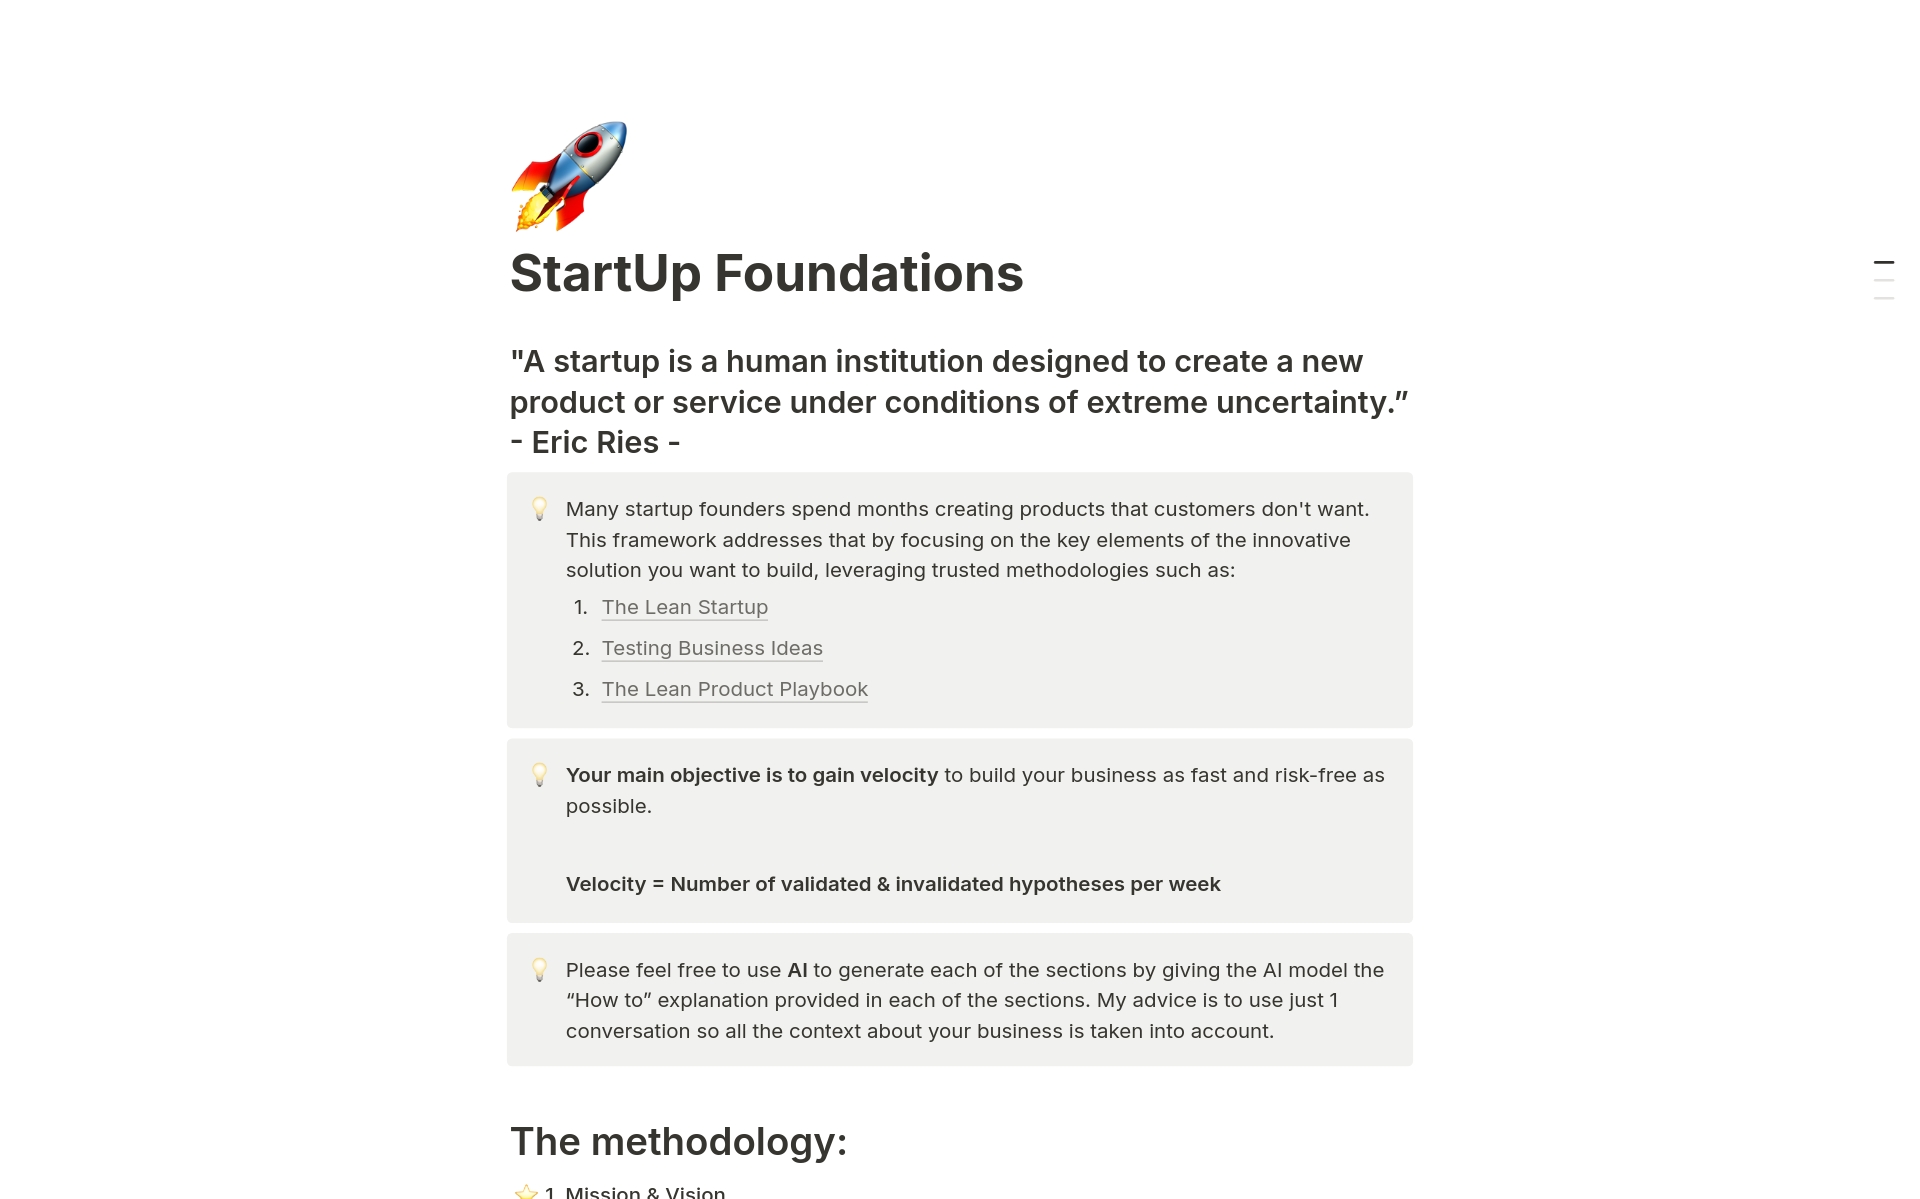 Vista previa de una plantilla para StartUp Foundations